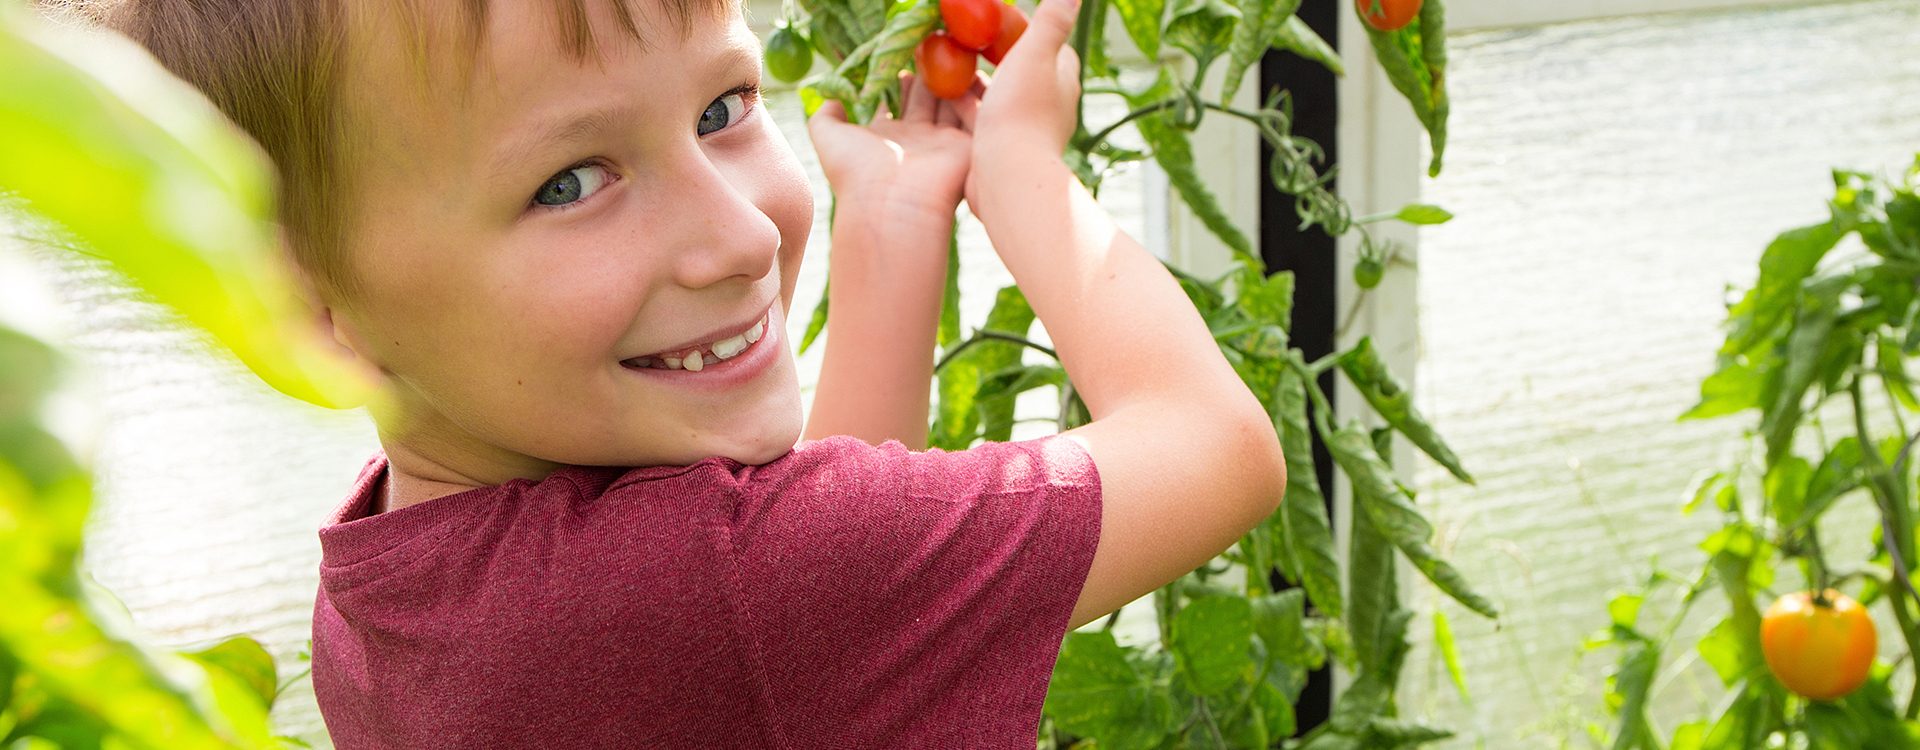 enfant-souriant-tient-des-tomates-en-main